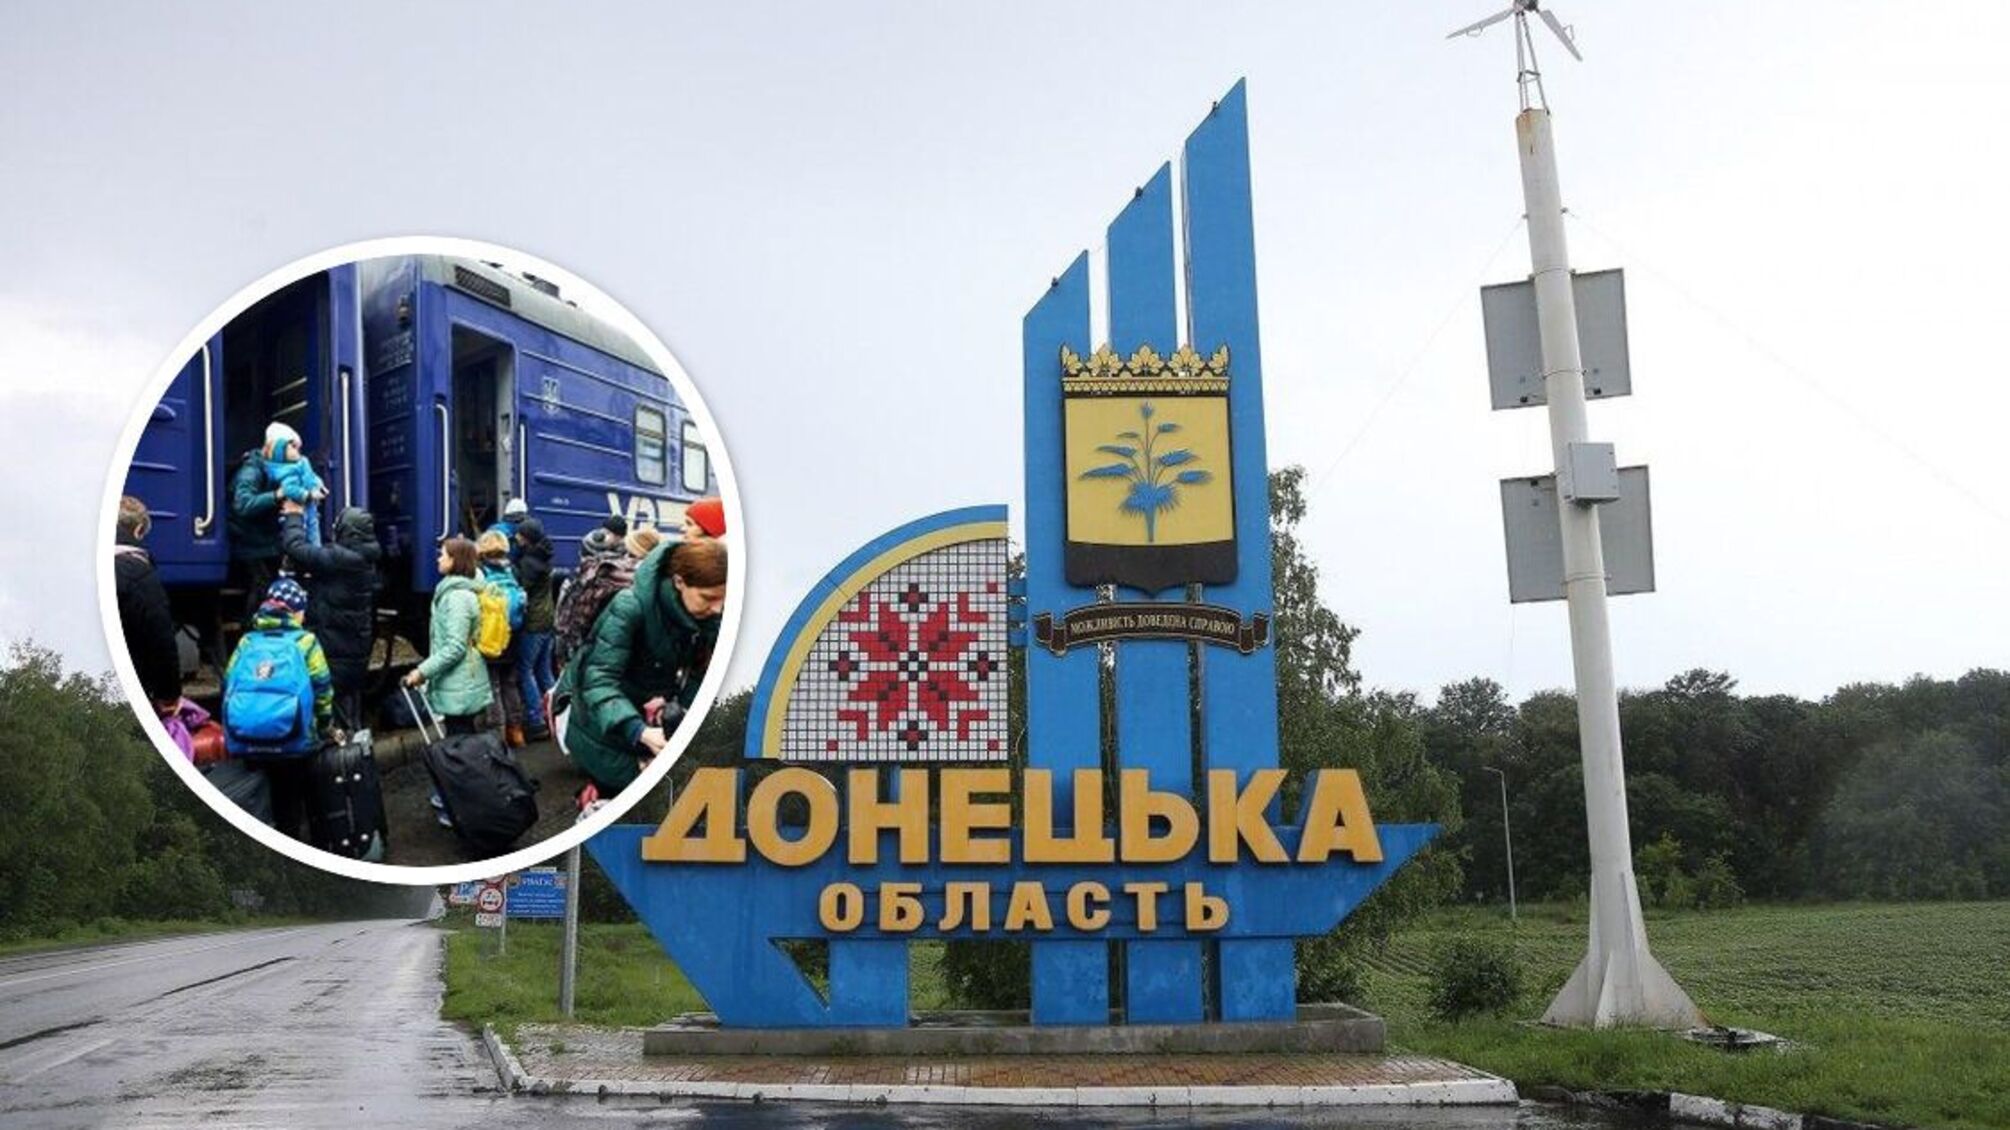 В Донецкой области объявлена принудительная эвакуация детей: что известно